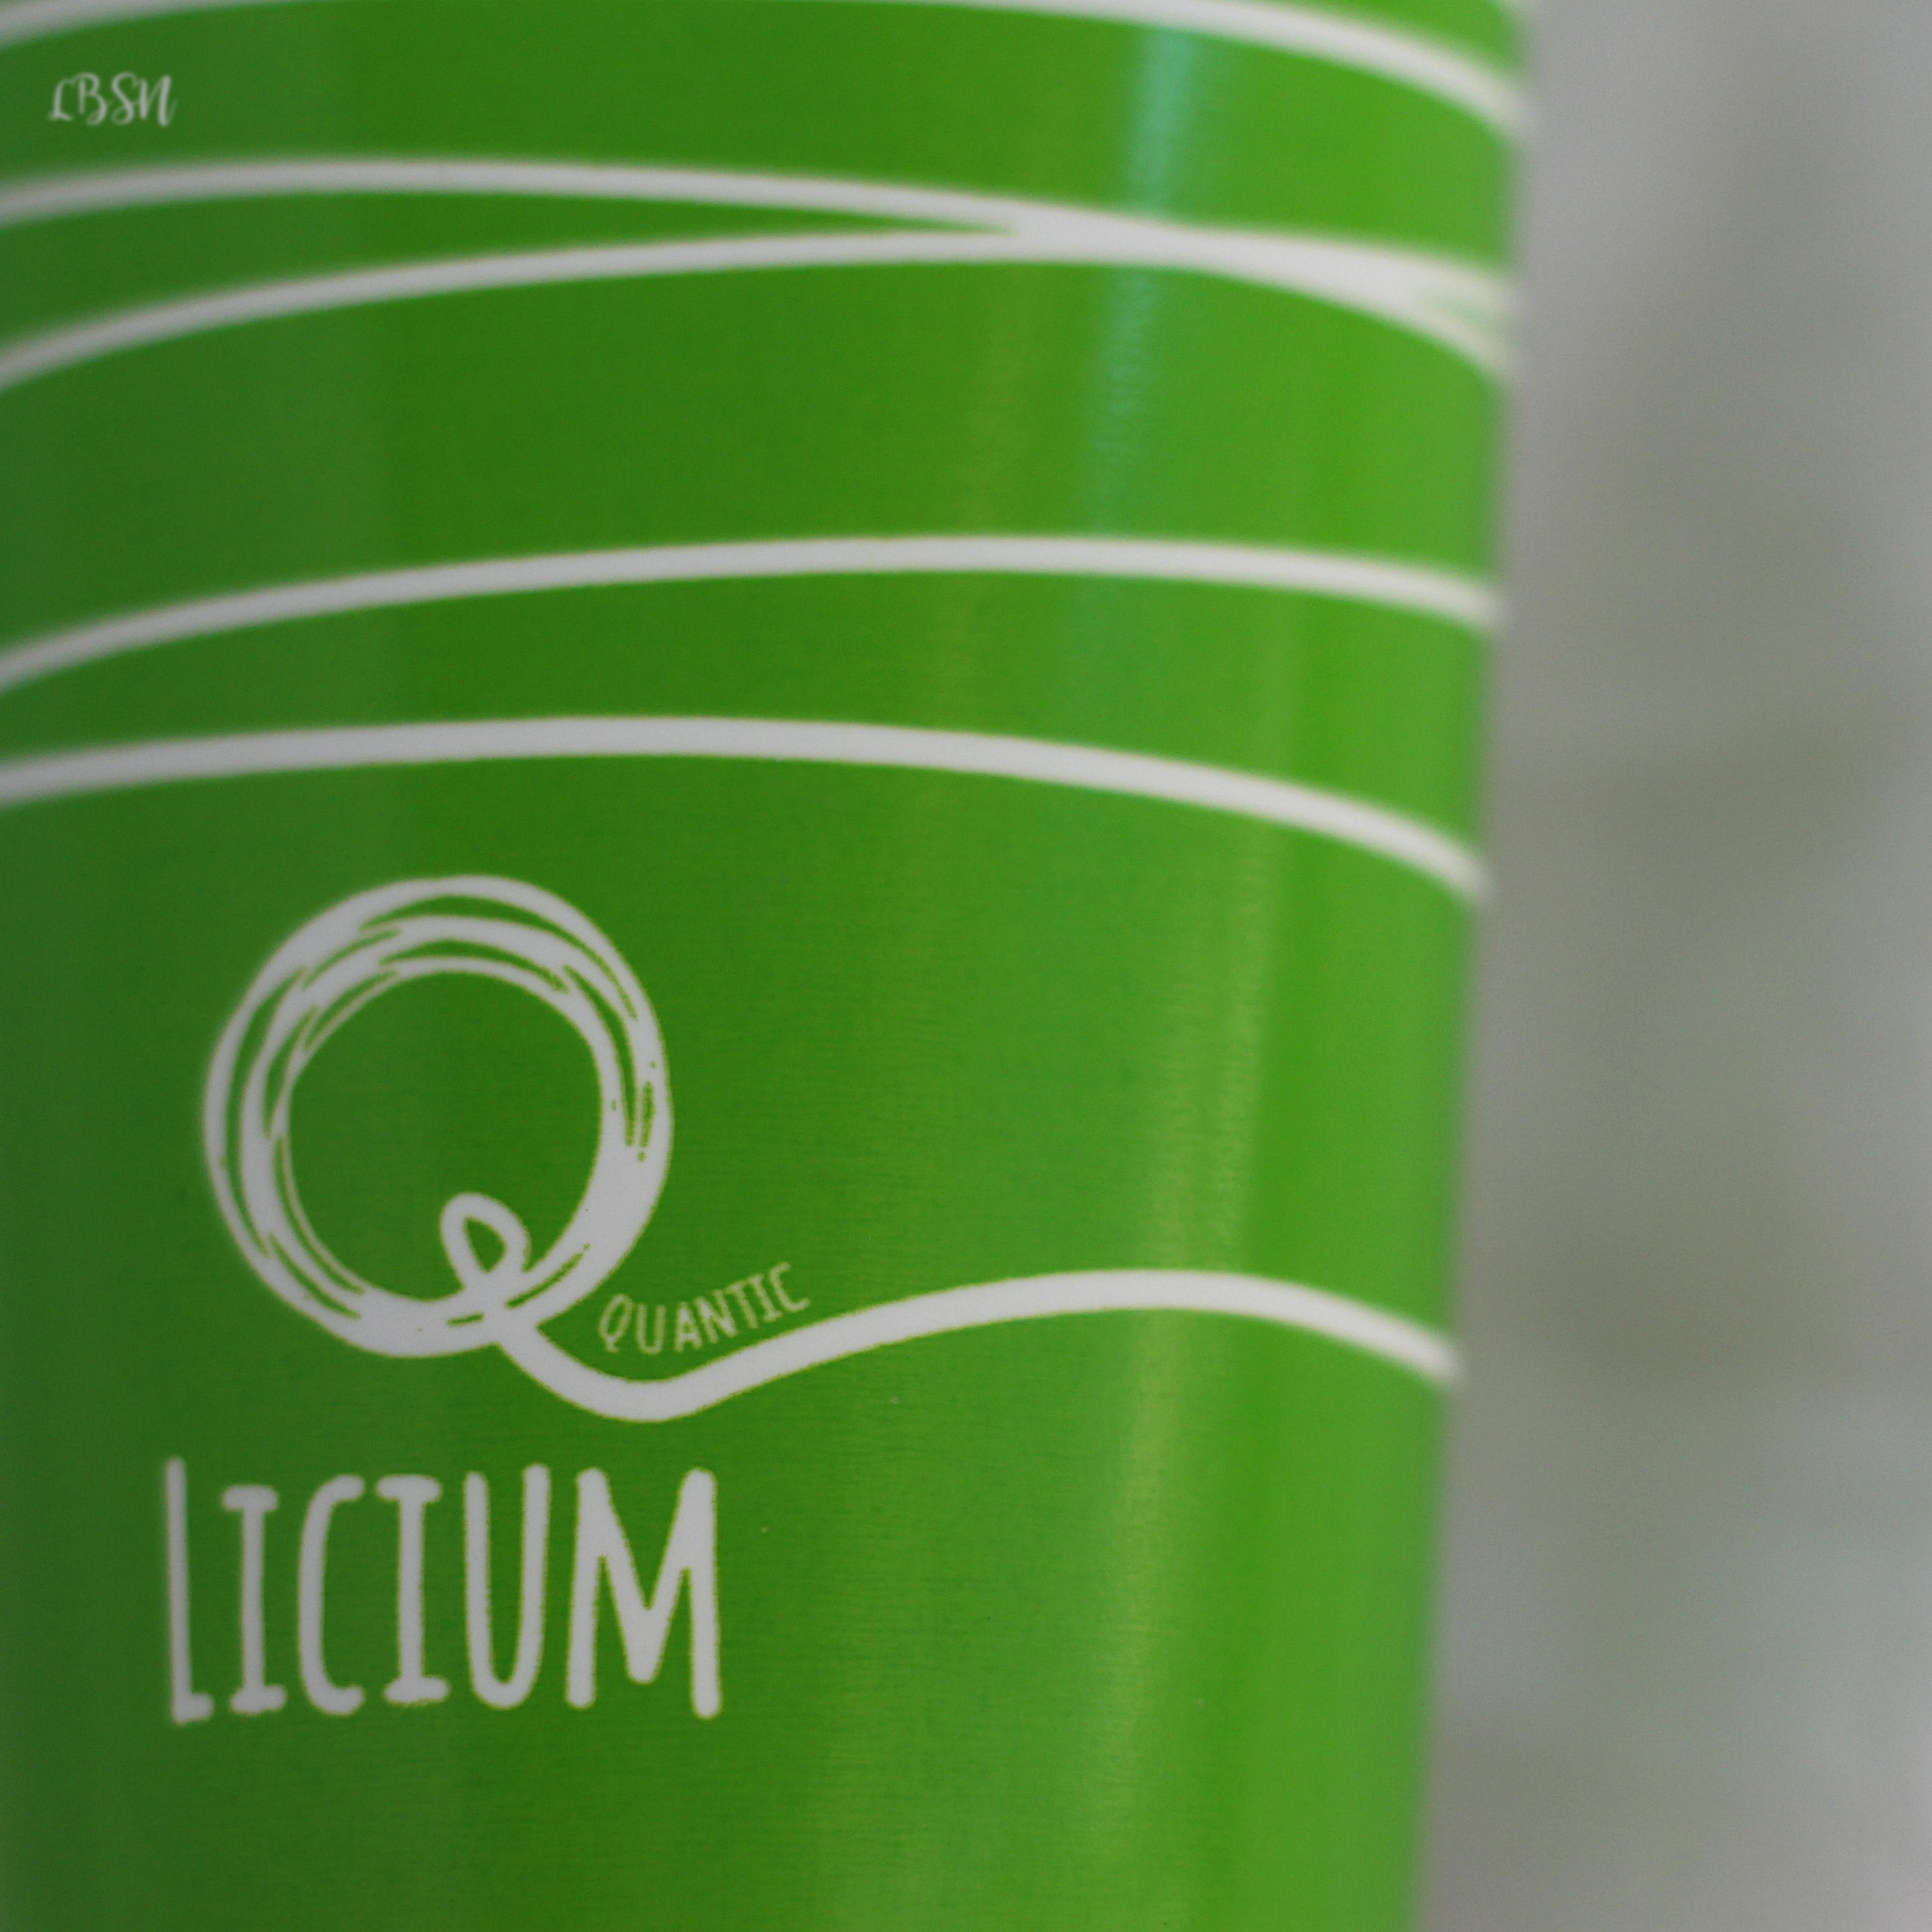 2 prodotti per prendersi cura delle mani - Quantic Licium